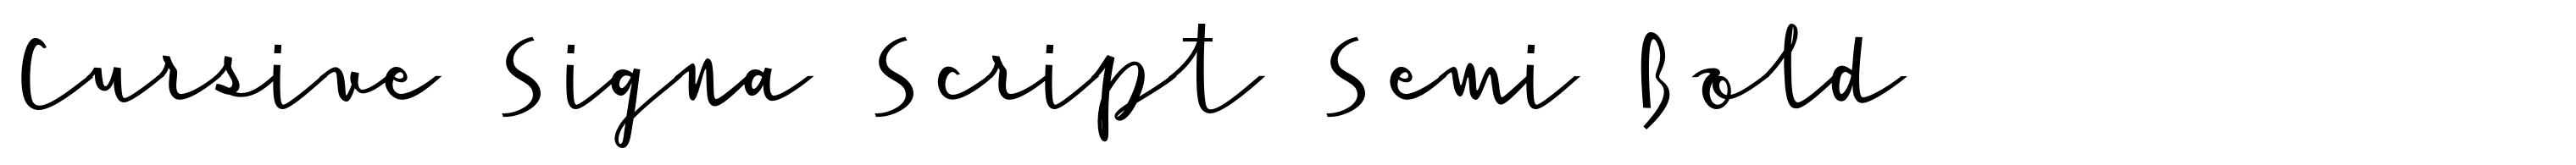 Cursive Signa Script Semi Bold